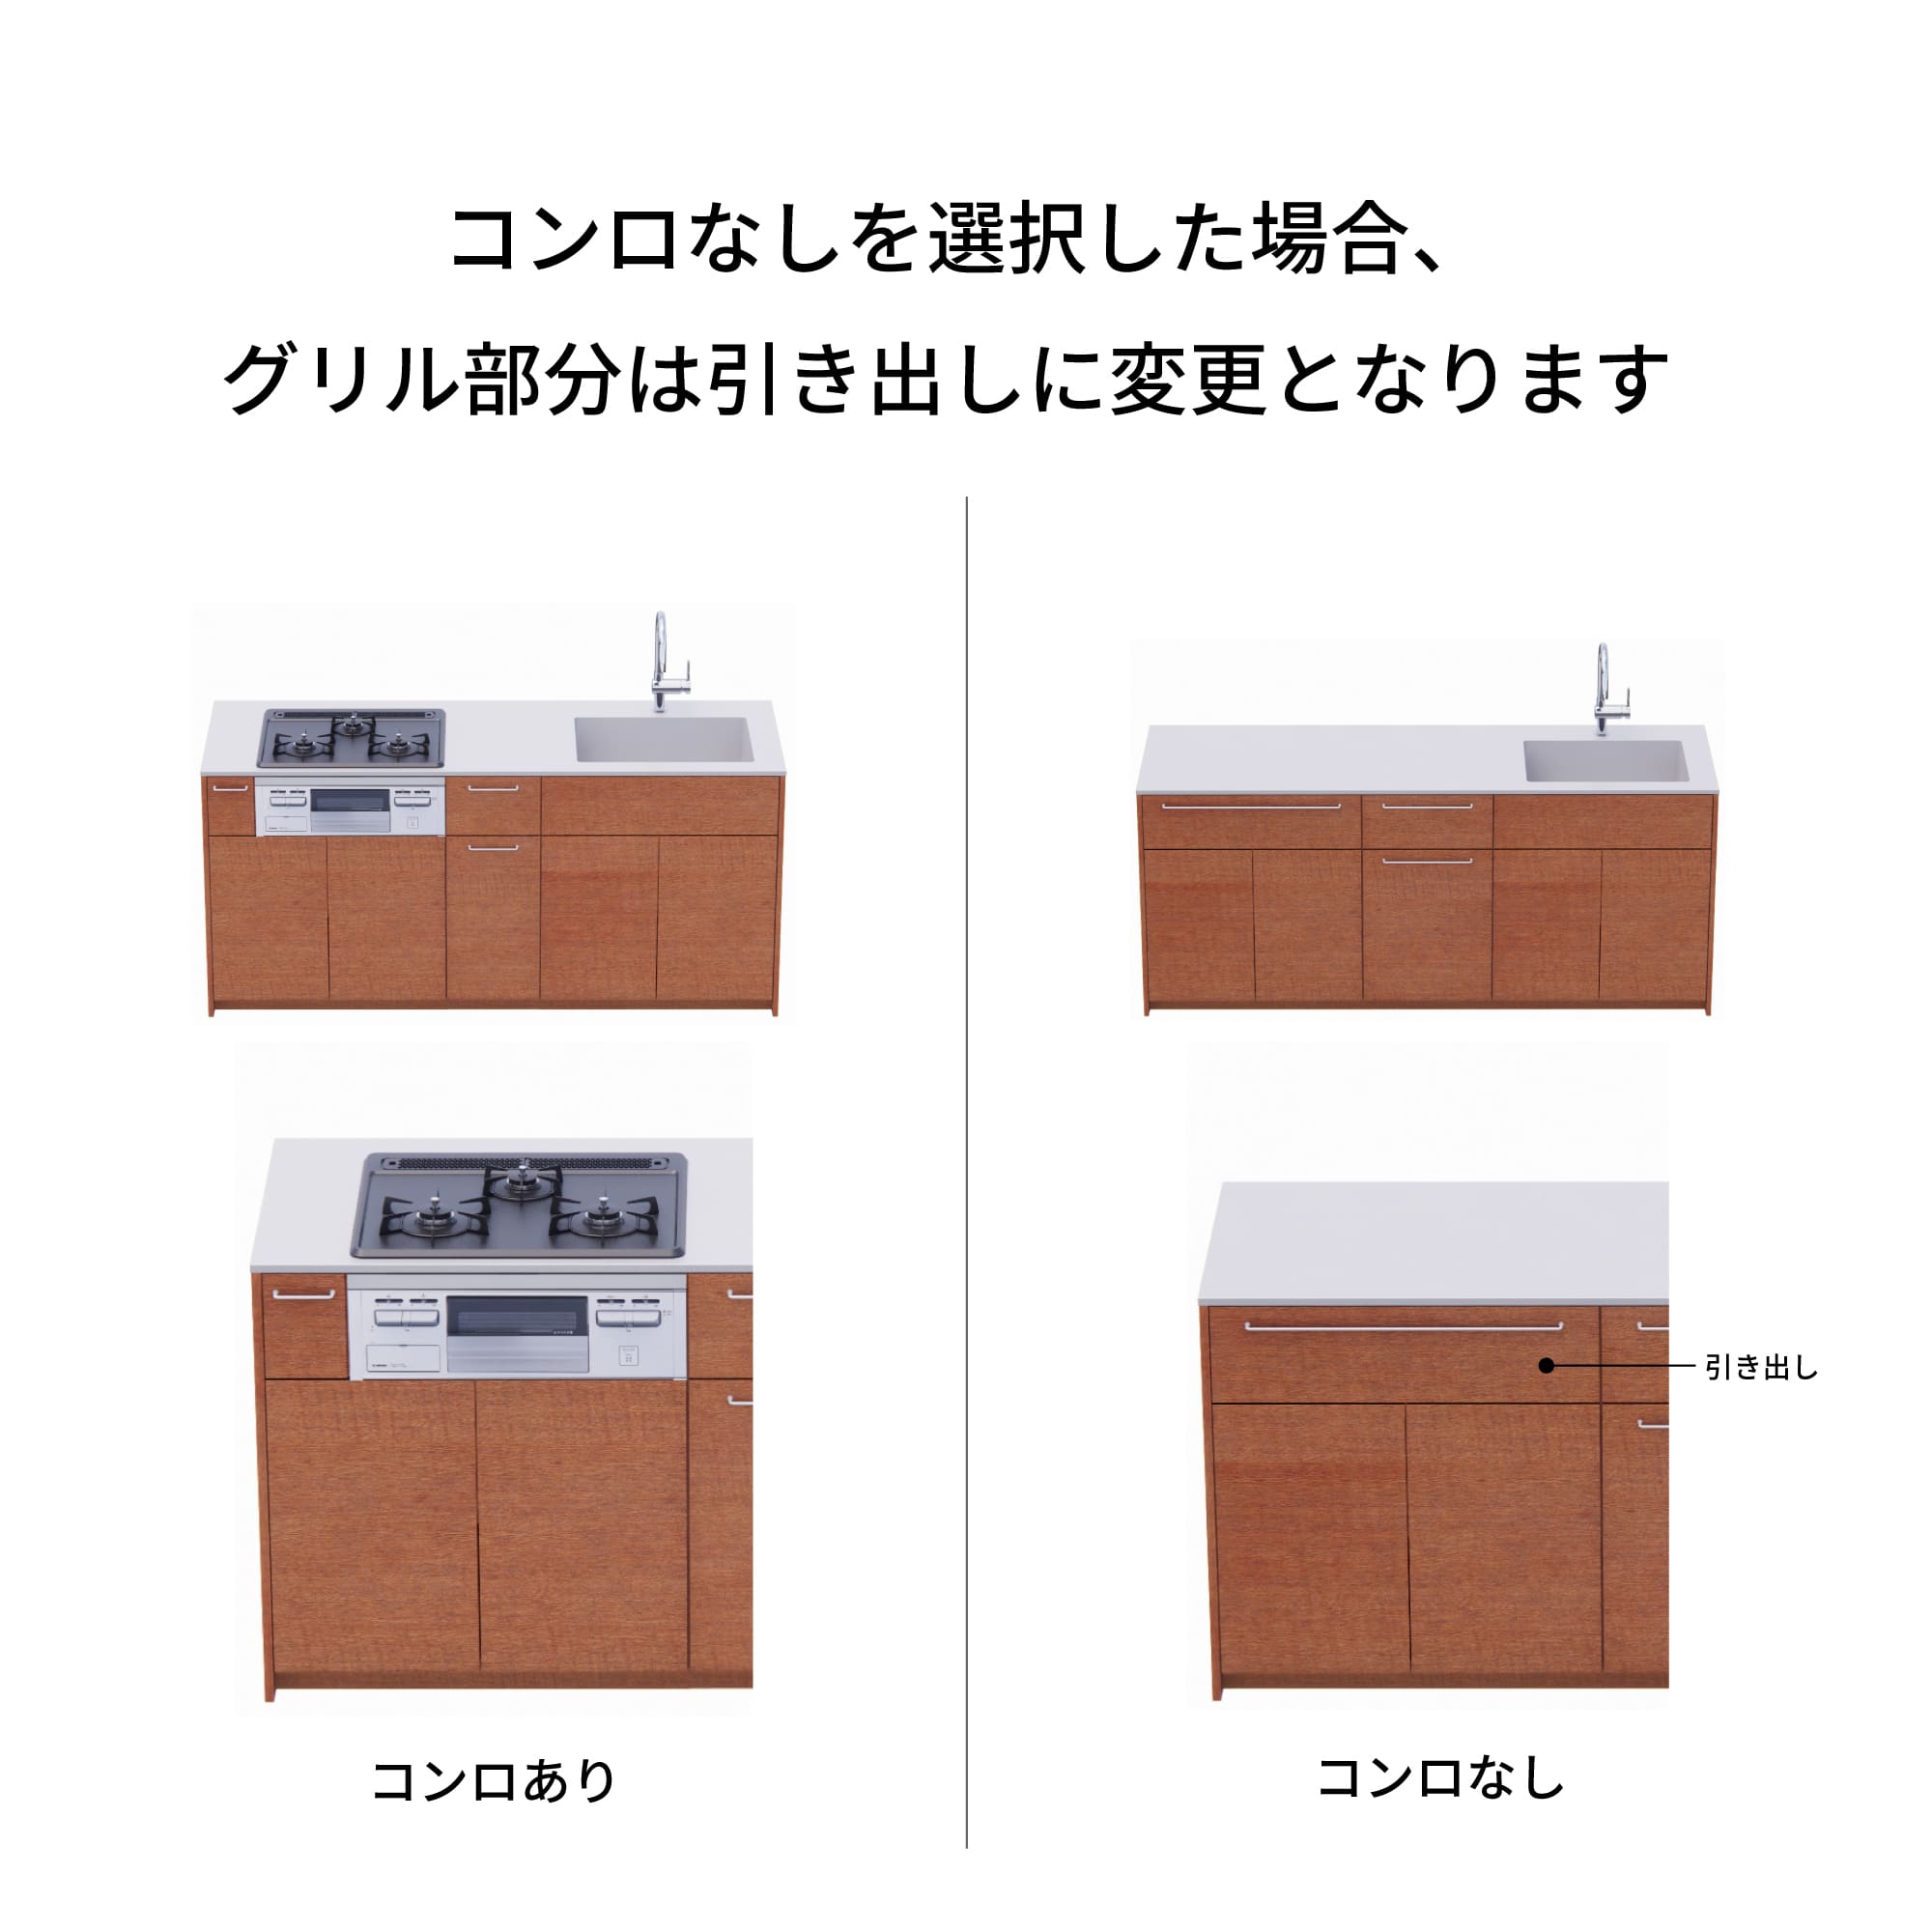 木製システムキッチン 対面型 W2140～2290・コンロなし / オーブンなし / 食洗機なし KB-KC022-36-G183 コンロ無しの場合、通常魚焼きグリルがある部分は引き出しになっています